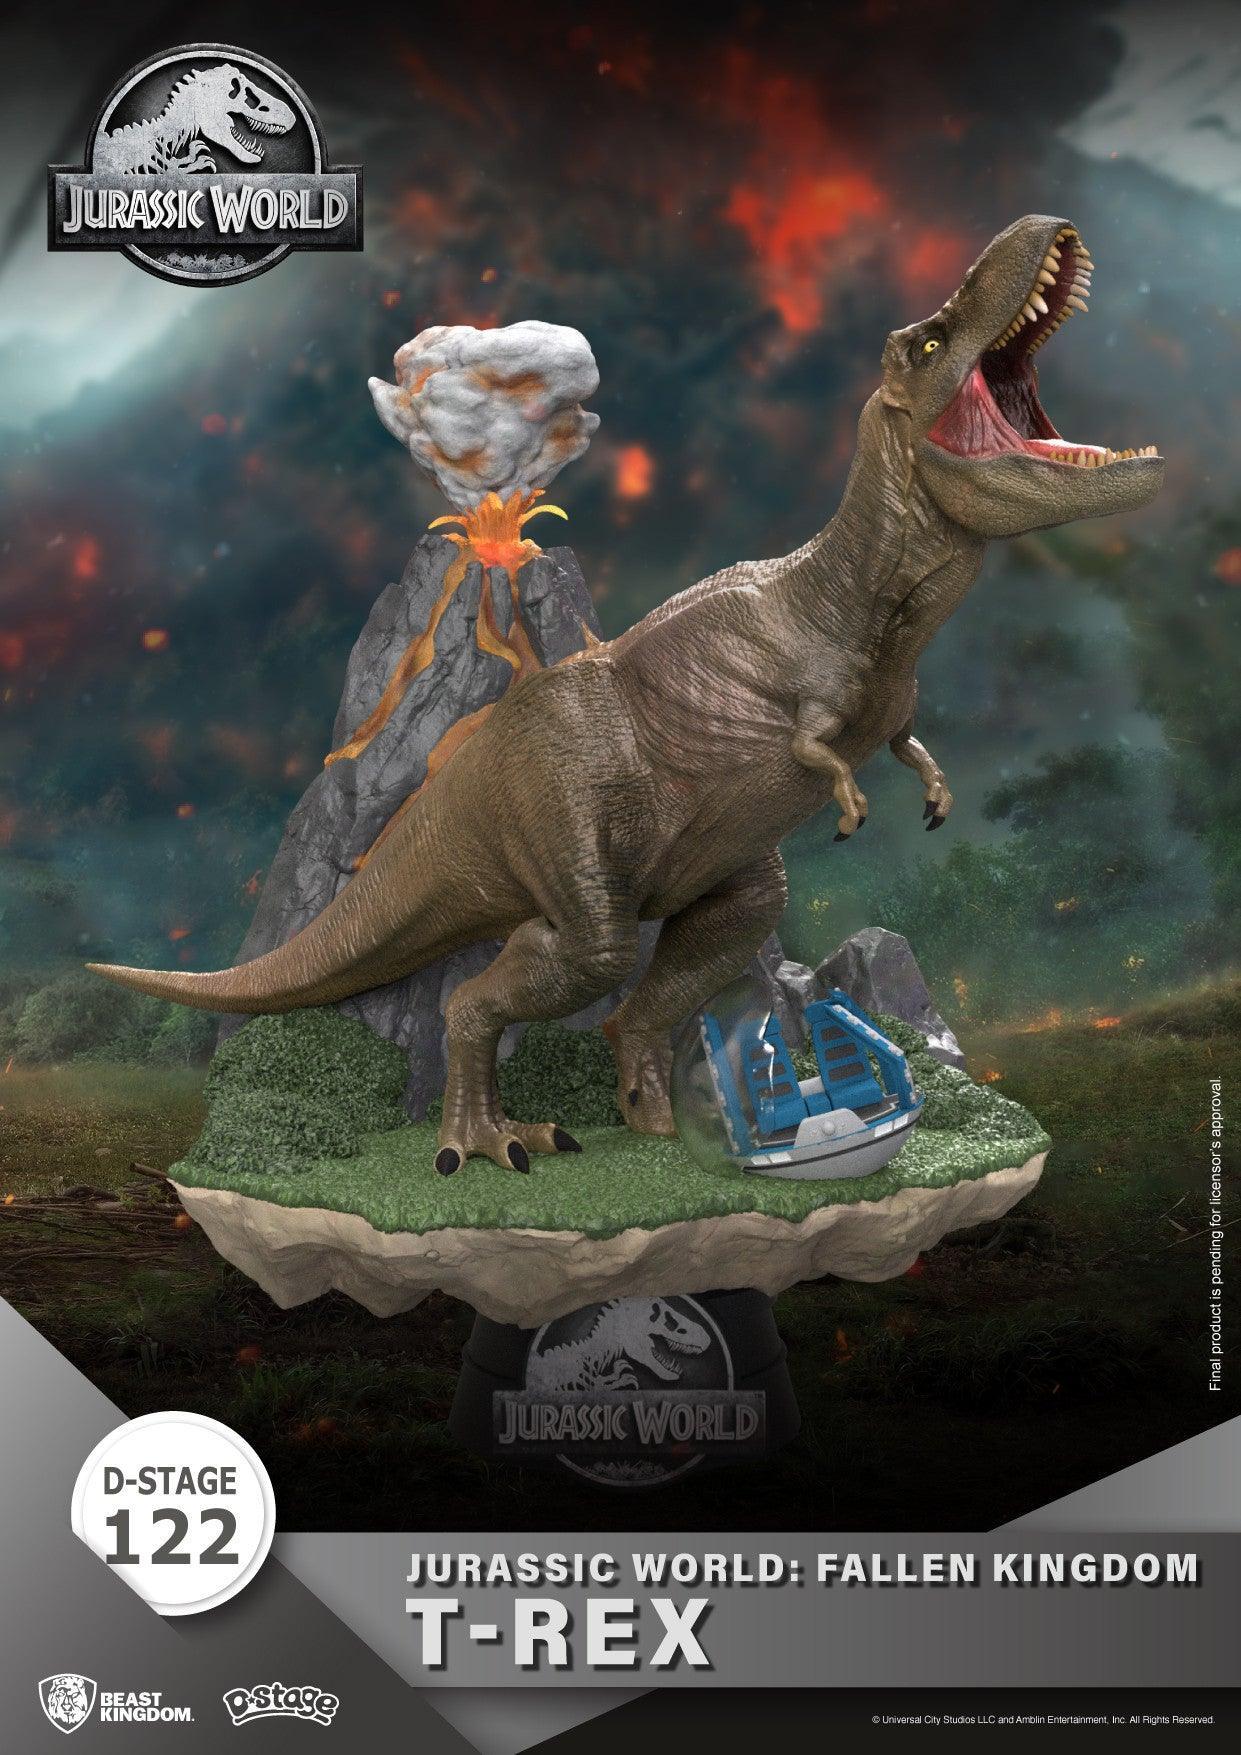 VR-100565 Beast Kingdom D Stage Jurassic World Fallen Kingdom T Rex - Beast Kingdom - Titan Pop Culture